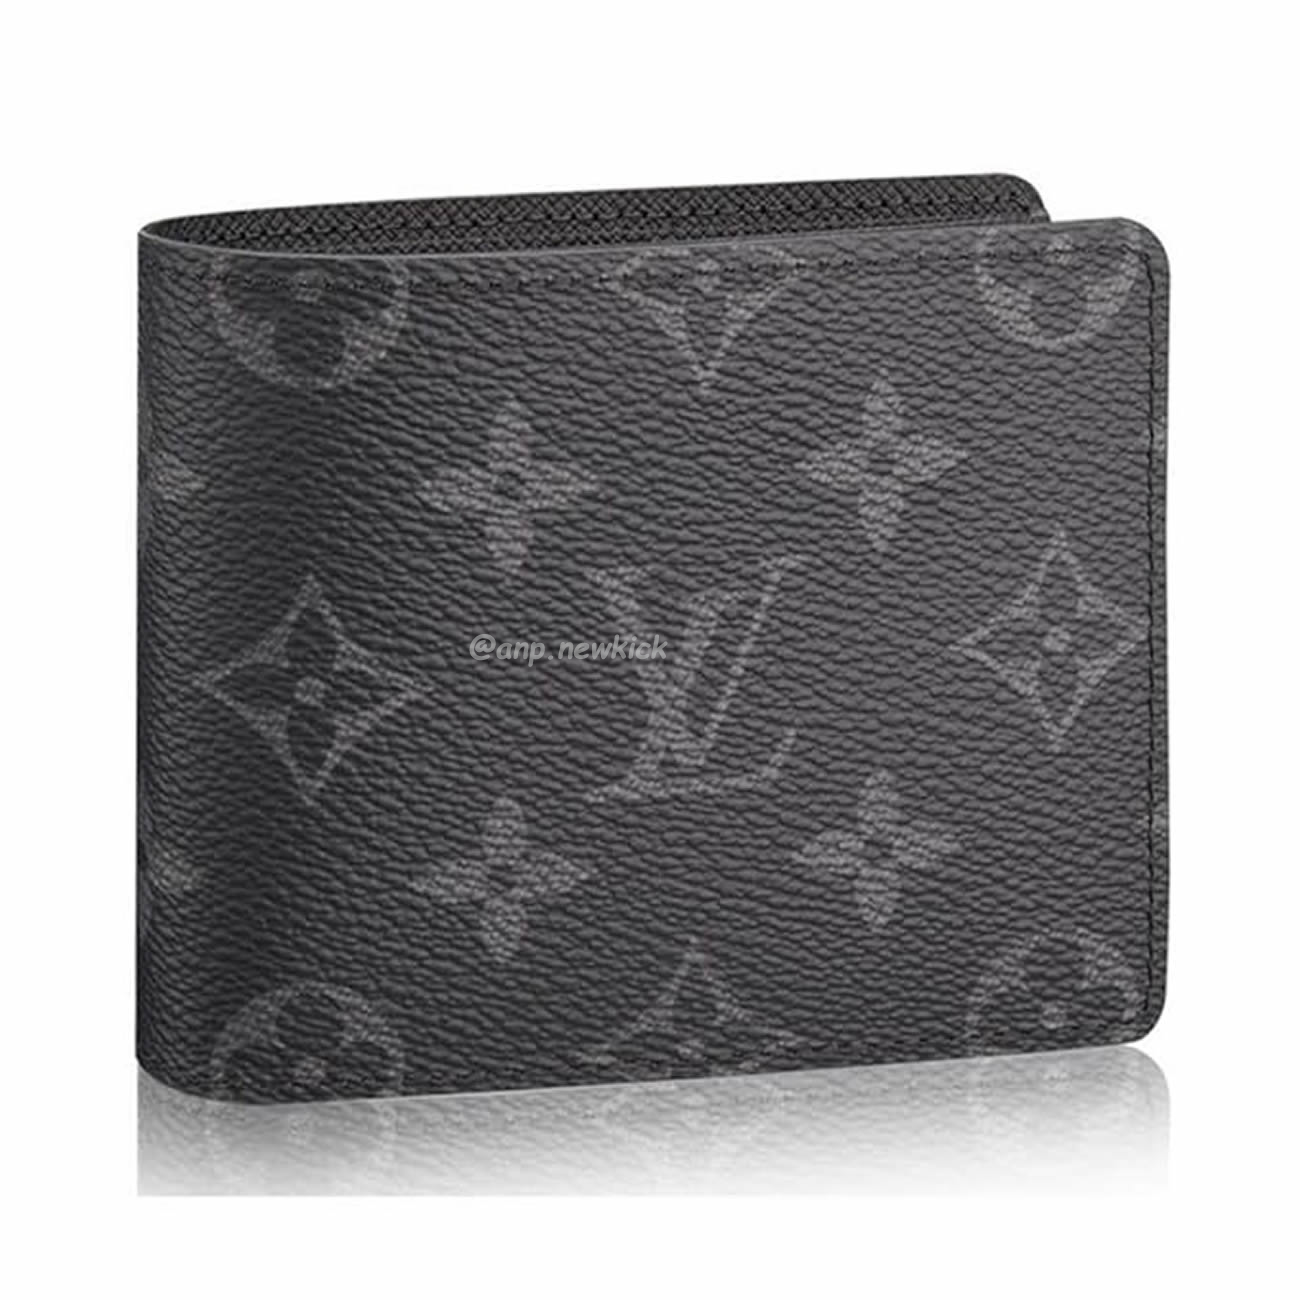 Louis Vuitton Slender Wallet Monogram Eclipse M62294 (1) - newkick.org